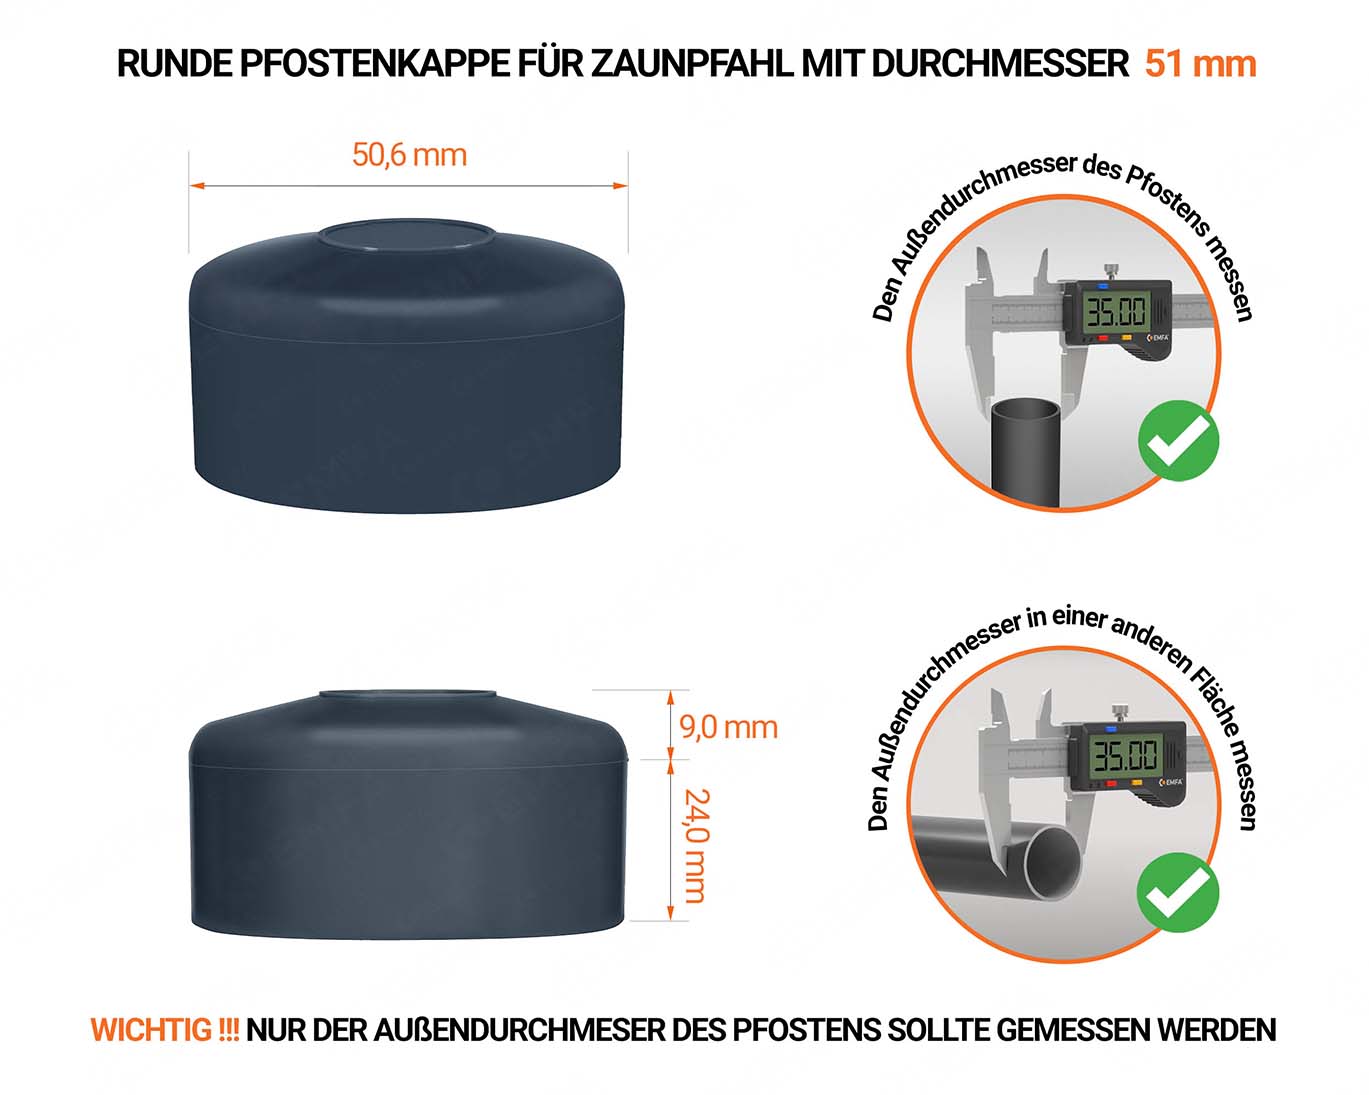 Anthrazite Pfostenkappen rund für Pfostendurchmesser  51 mm mit technischen Abmessungen und Anleitung für korrekte Messung